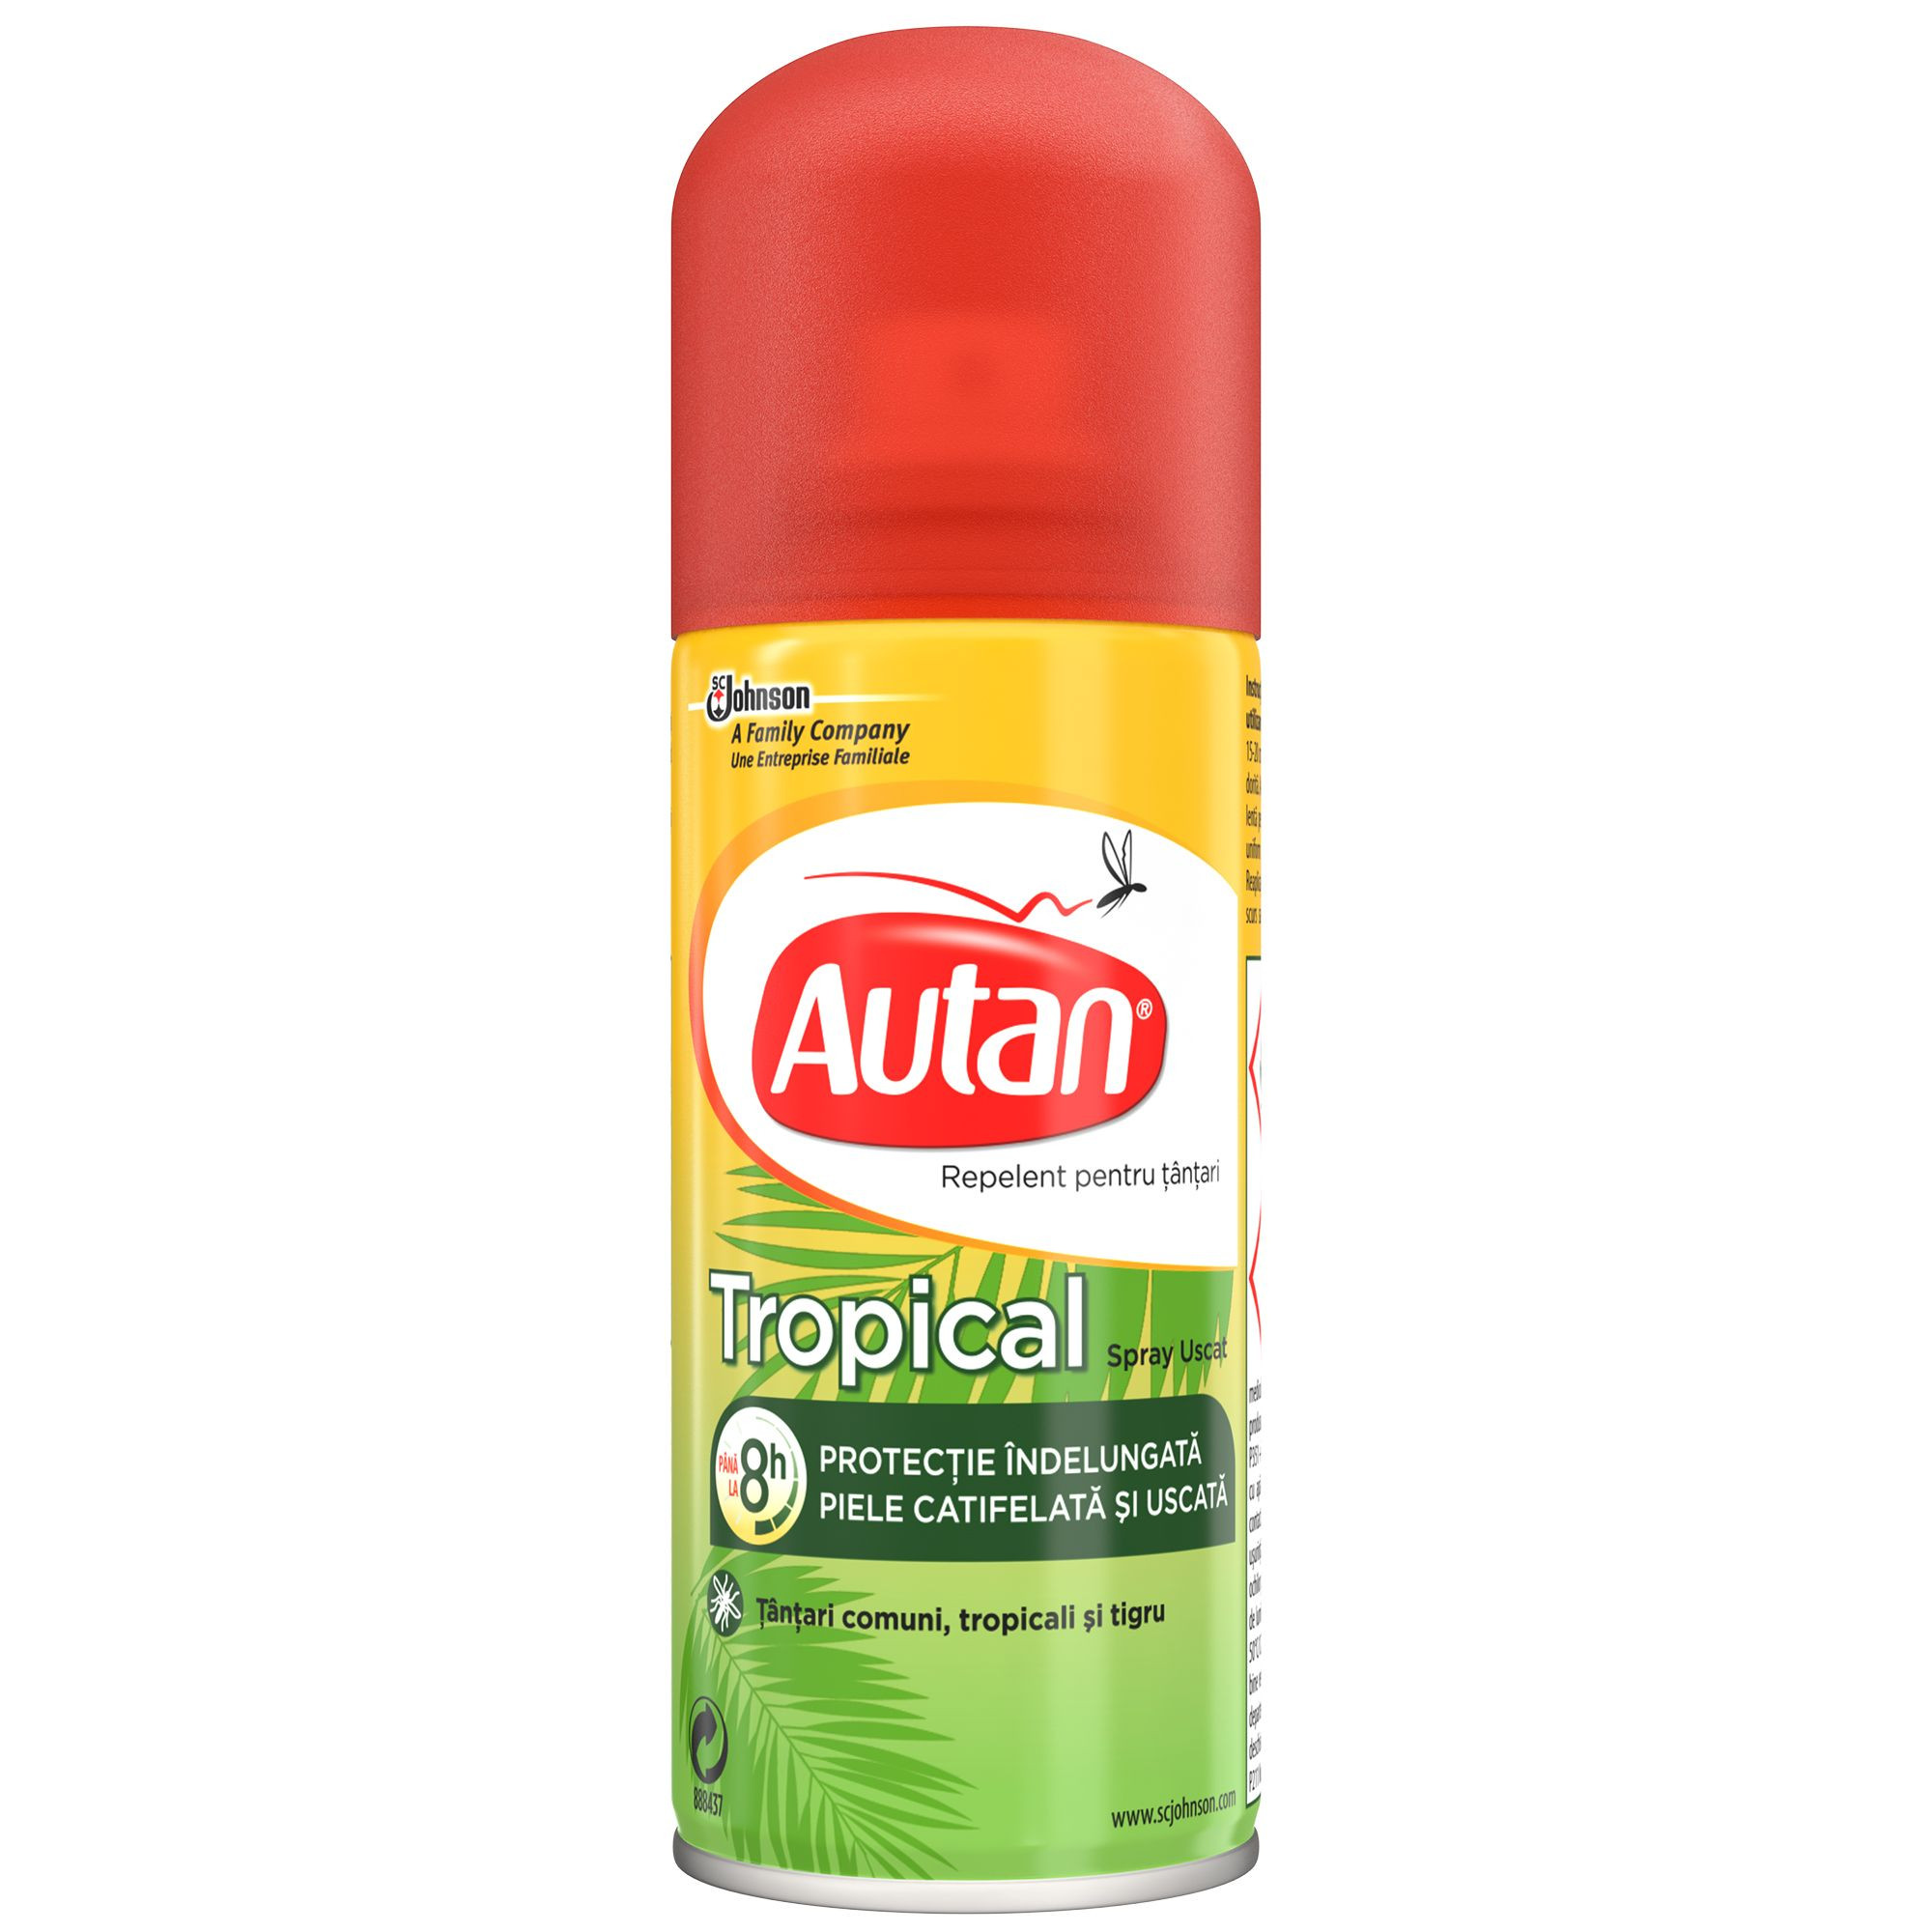 Autan tropical spray 100 ml